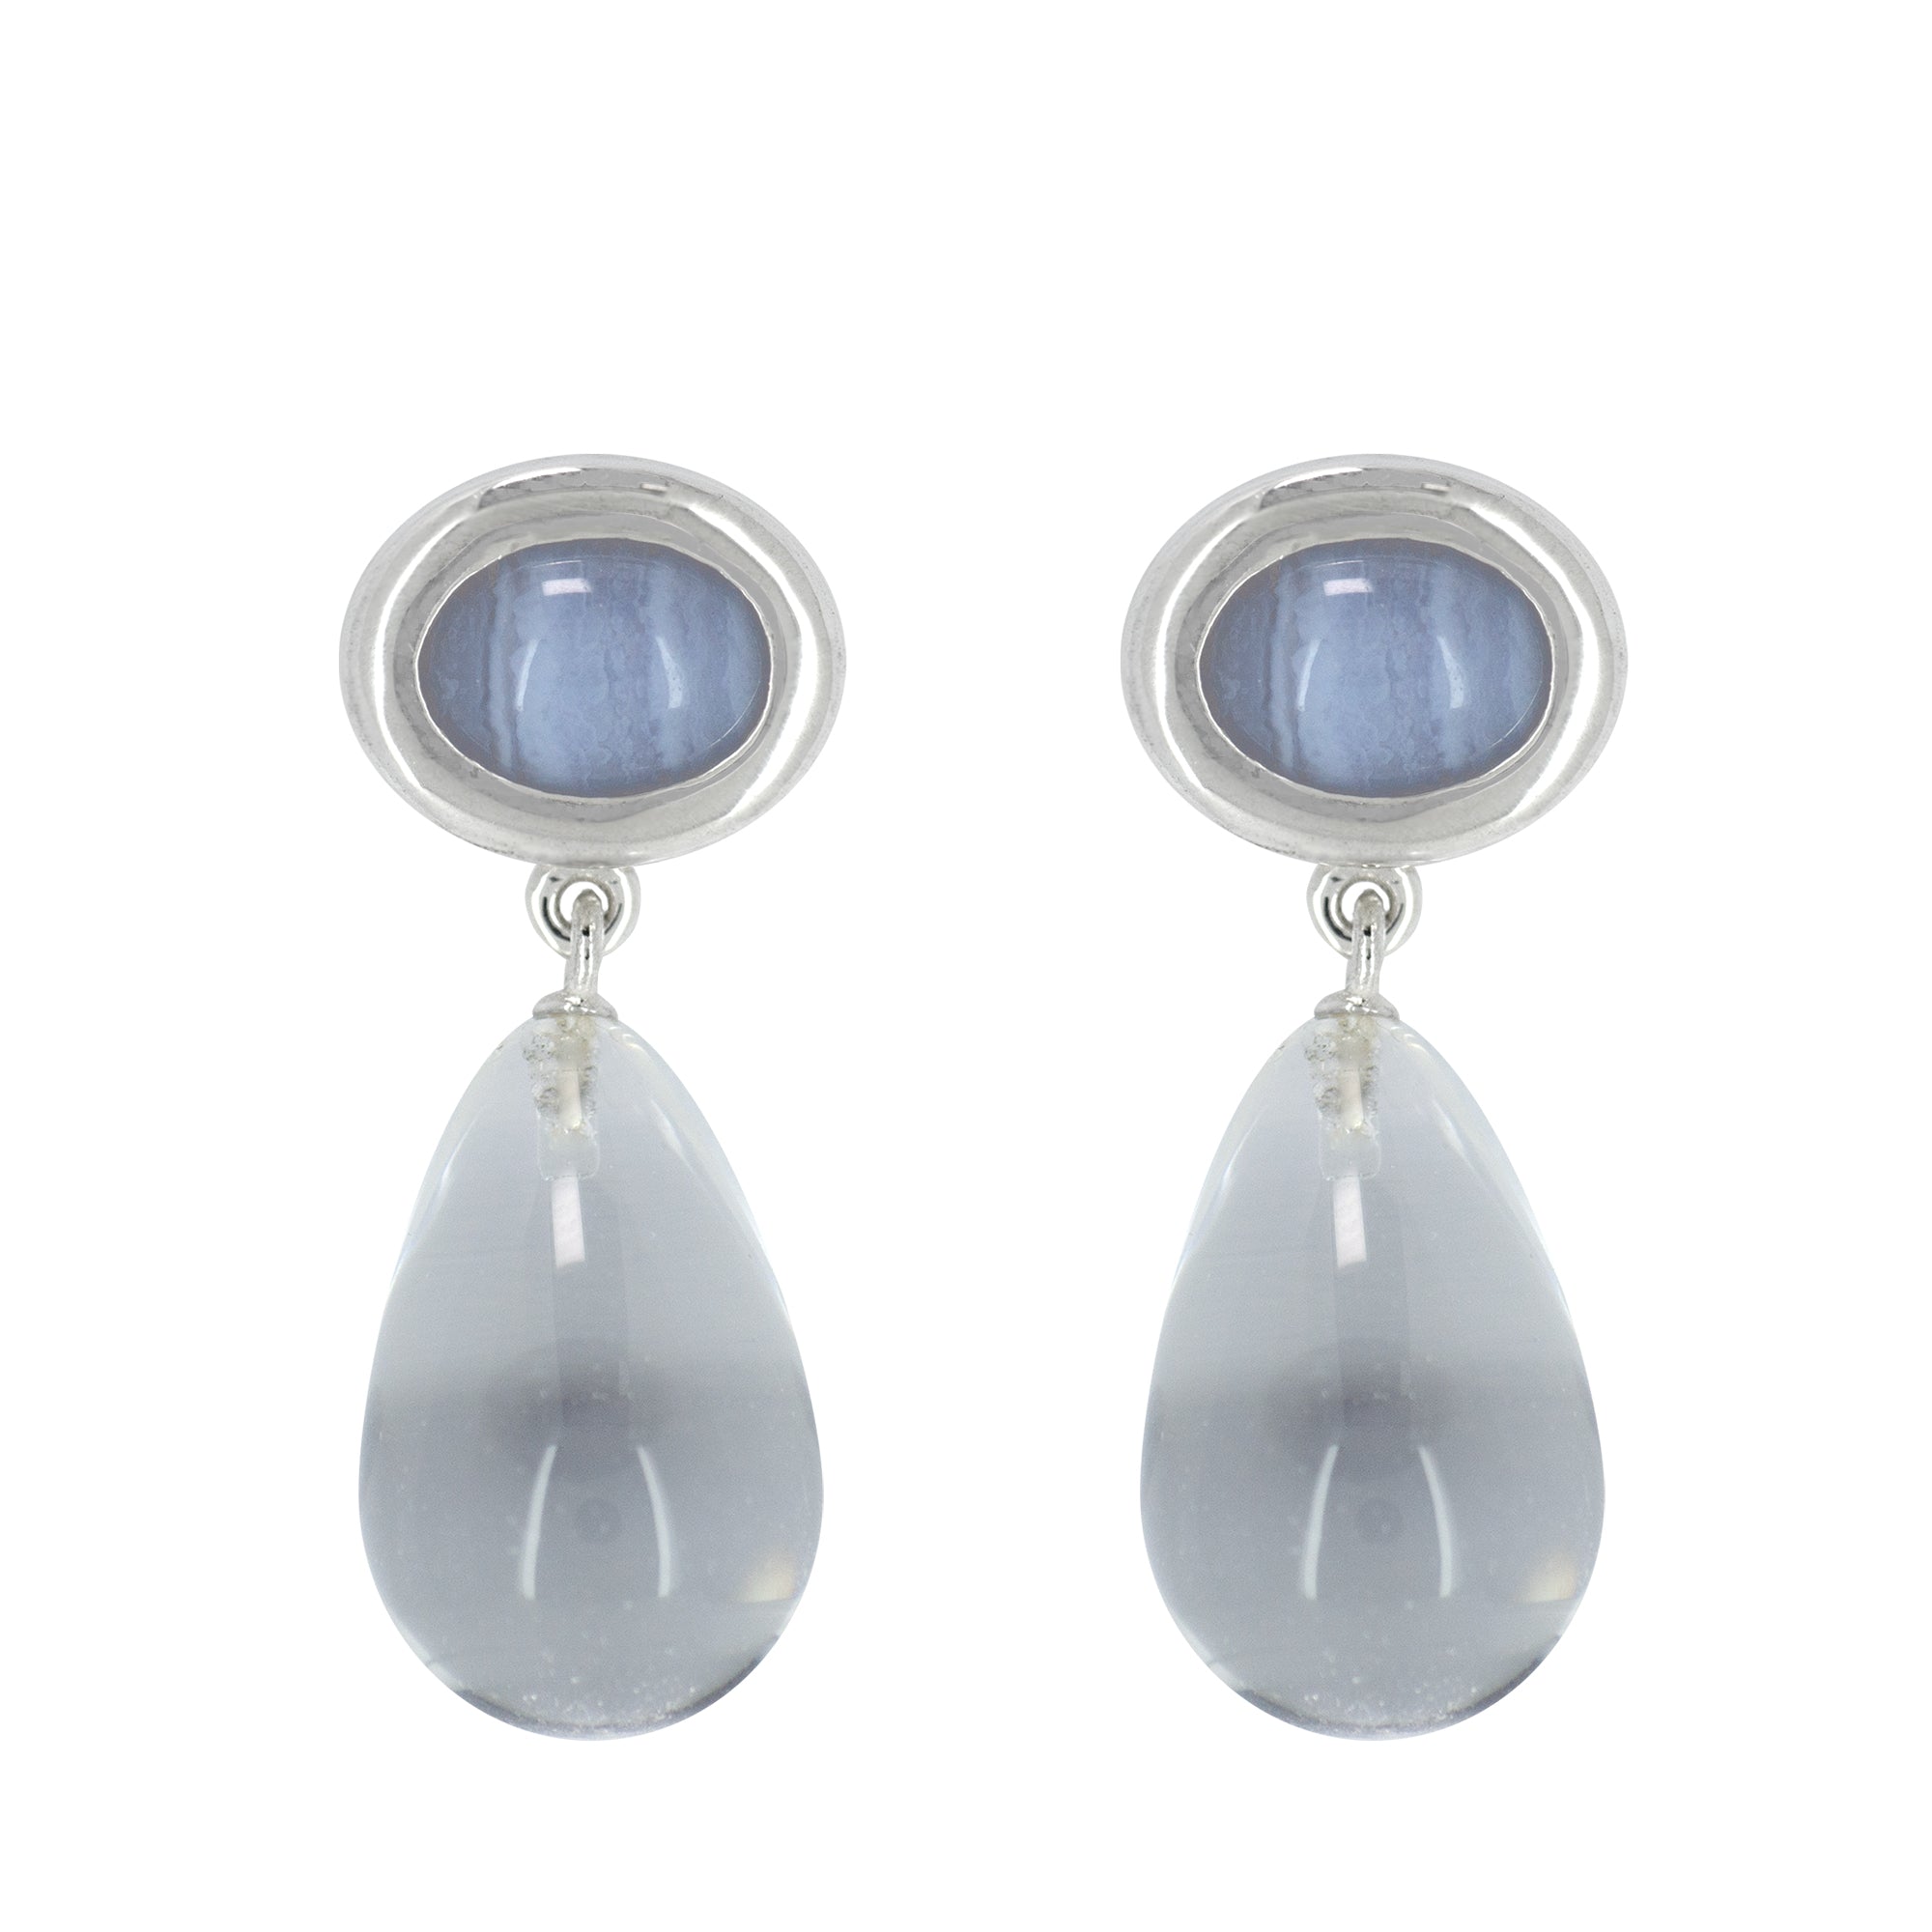 ドロップ オーバル レーク ピアス：ジェムストーン / drop oval lake earring (gemstone)